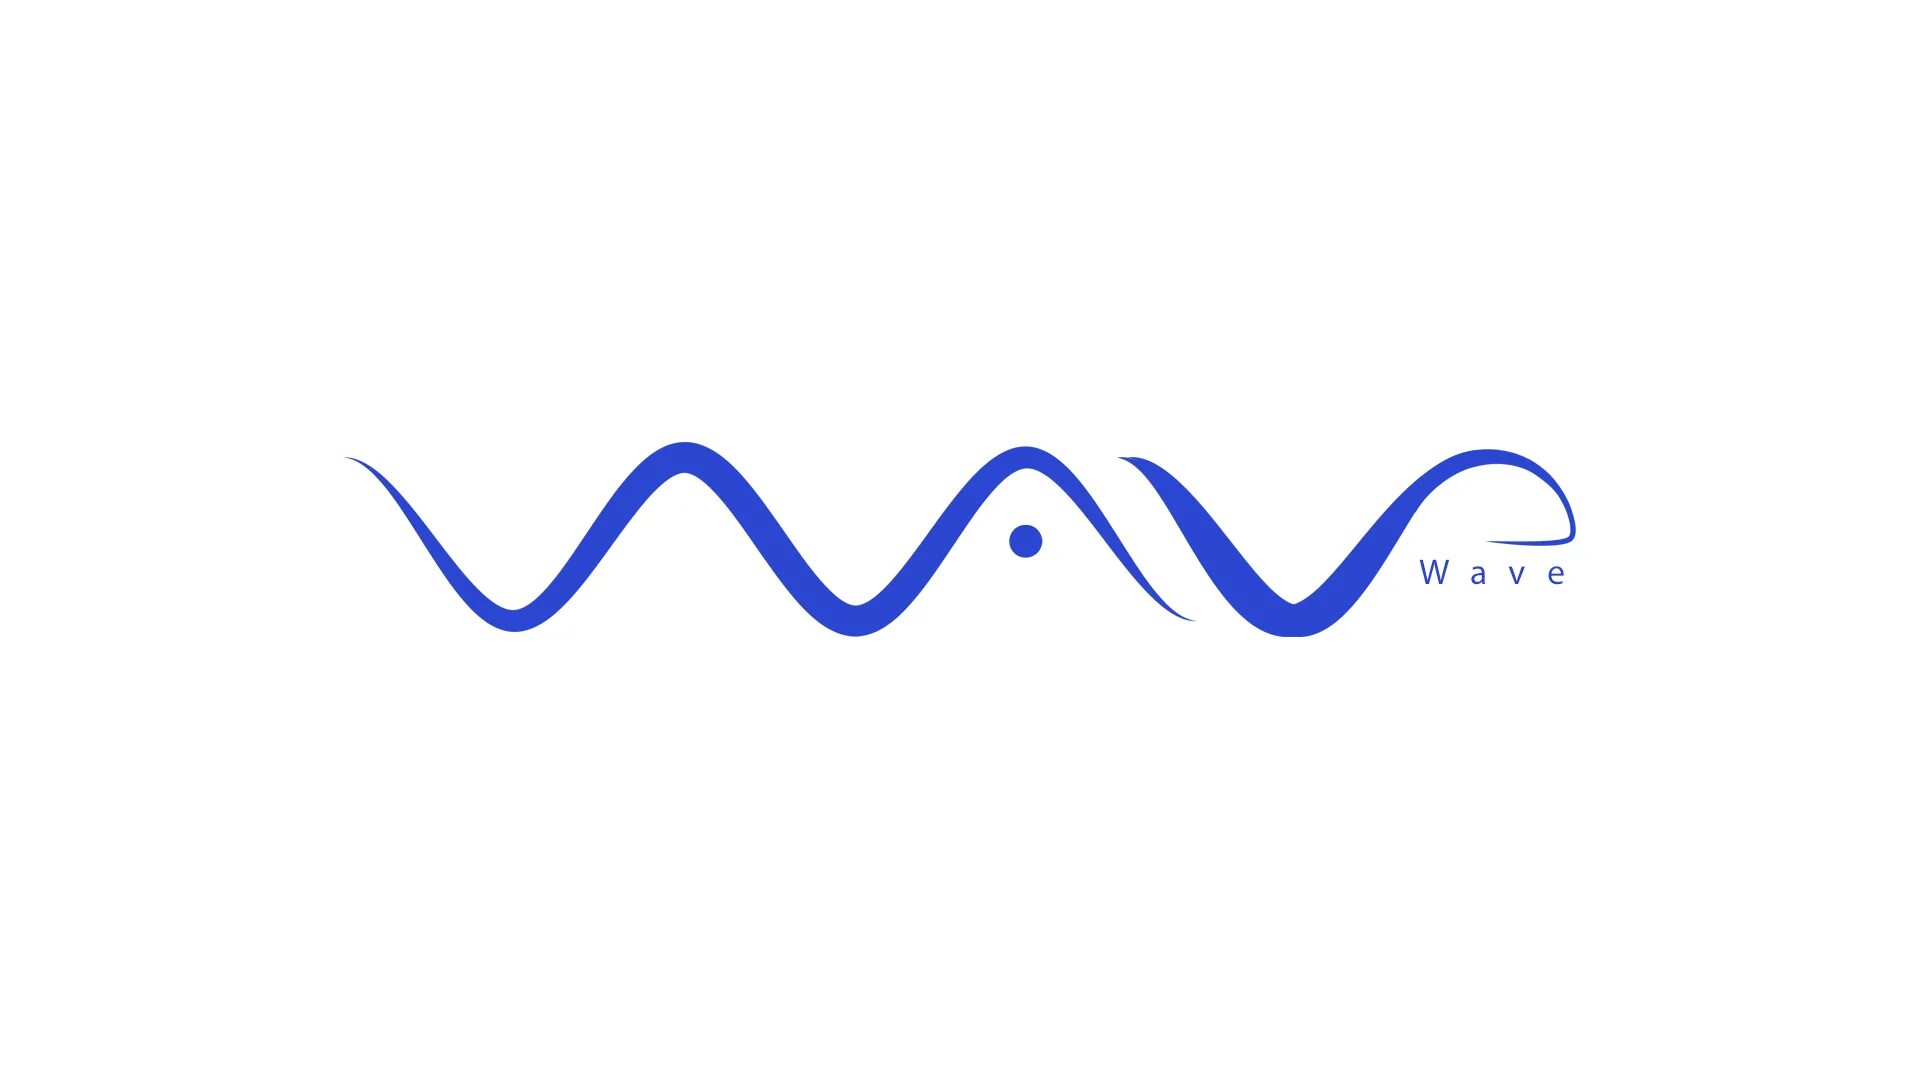 Эмблема волна. Логотип в виде волны. Волна вектор. Стилизованная волна для логотипа.